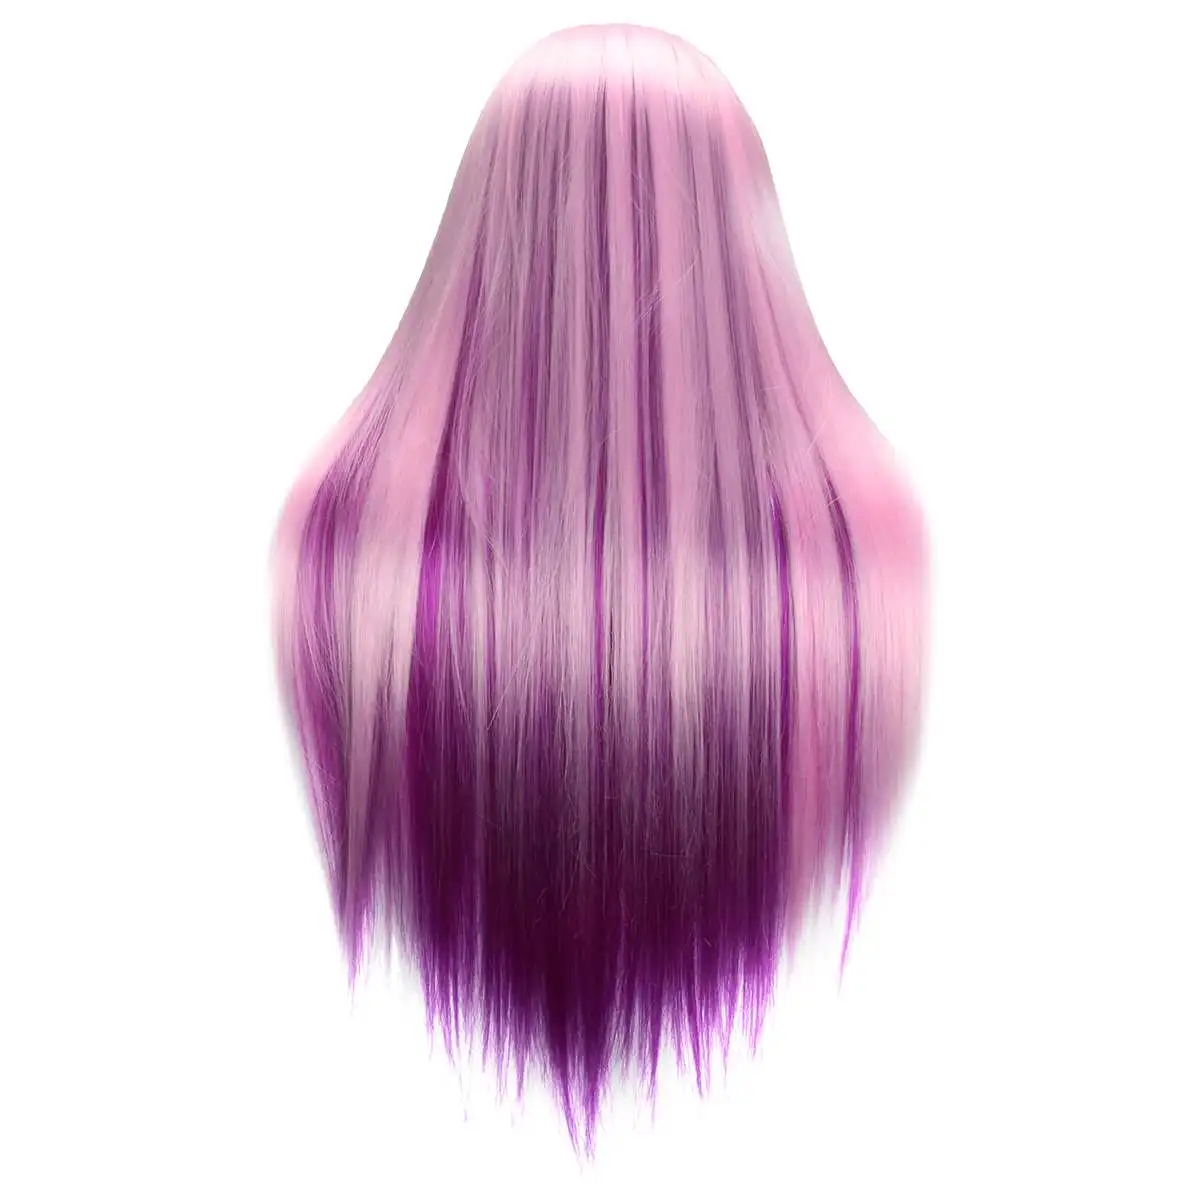 2" Красочные манекены радужные куклы голова с 90 см фиолетовые волокна длинные волосы Парикмахерская косметологическая салон манекен тренировочная голова